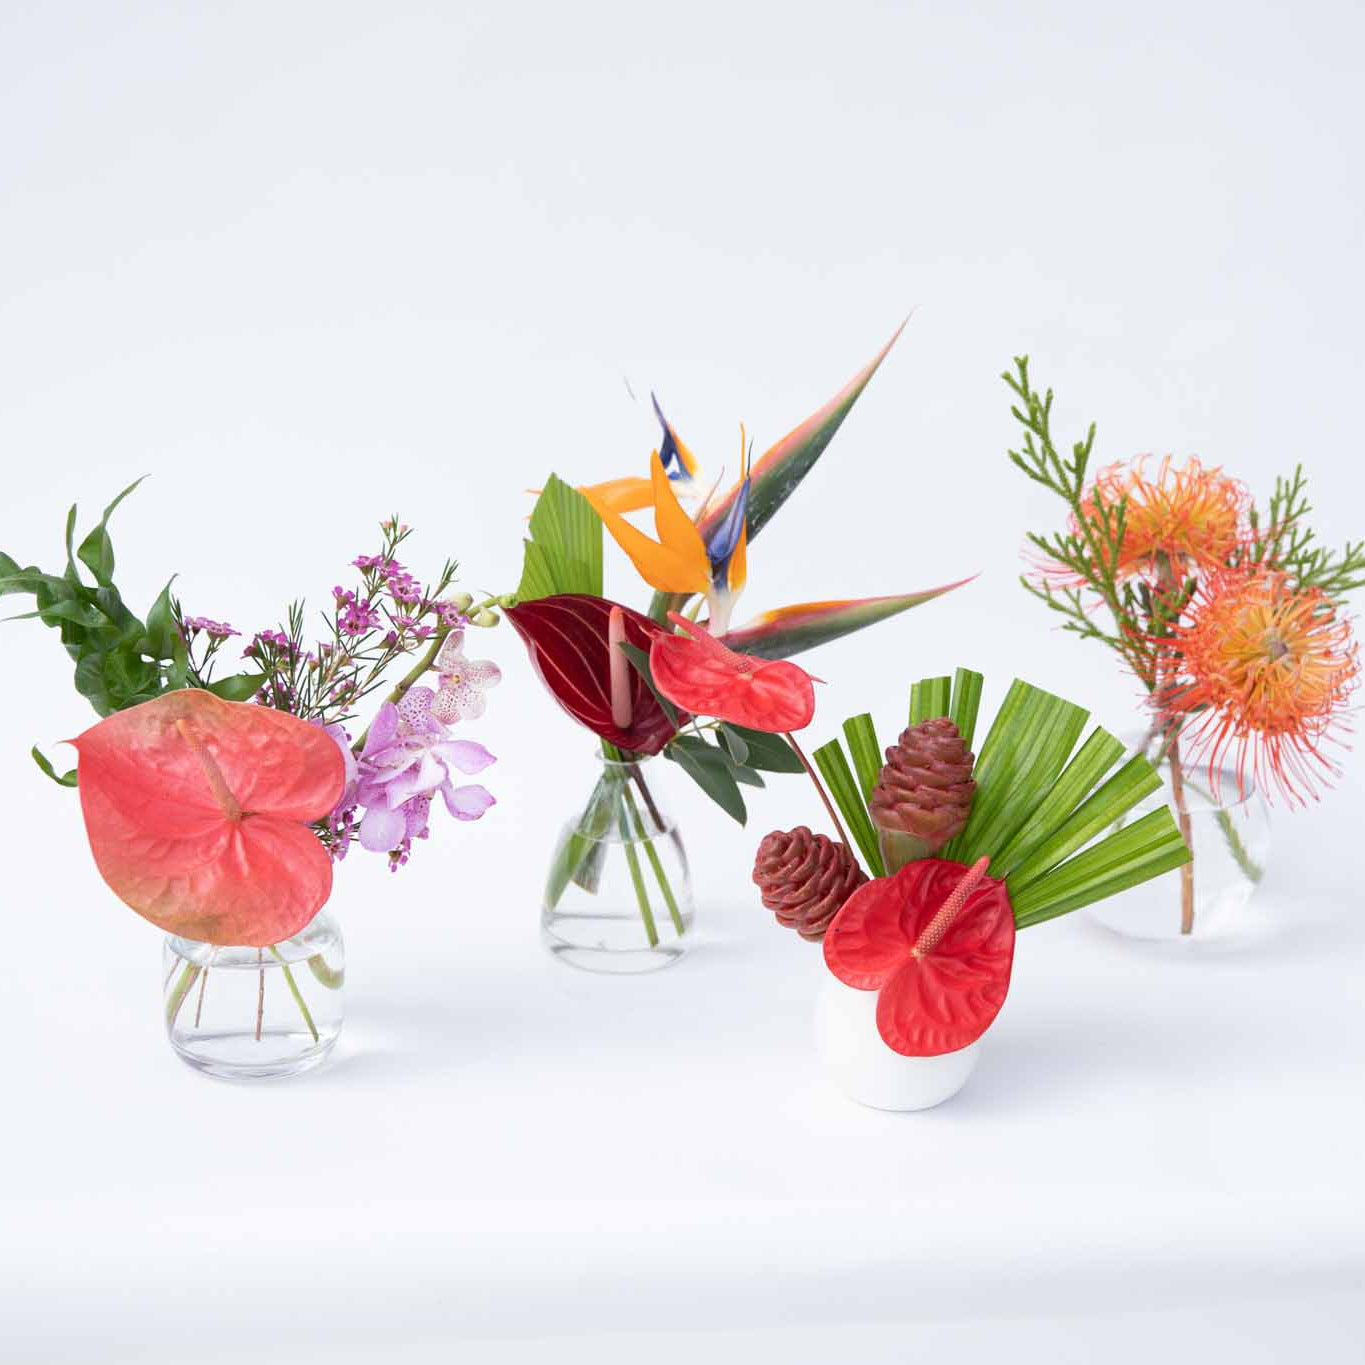 Floral Design - Bud Vases Workshop 5/29 at 6:30p